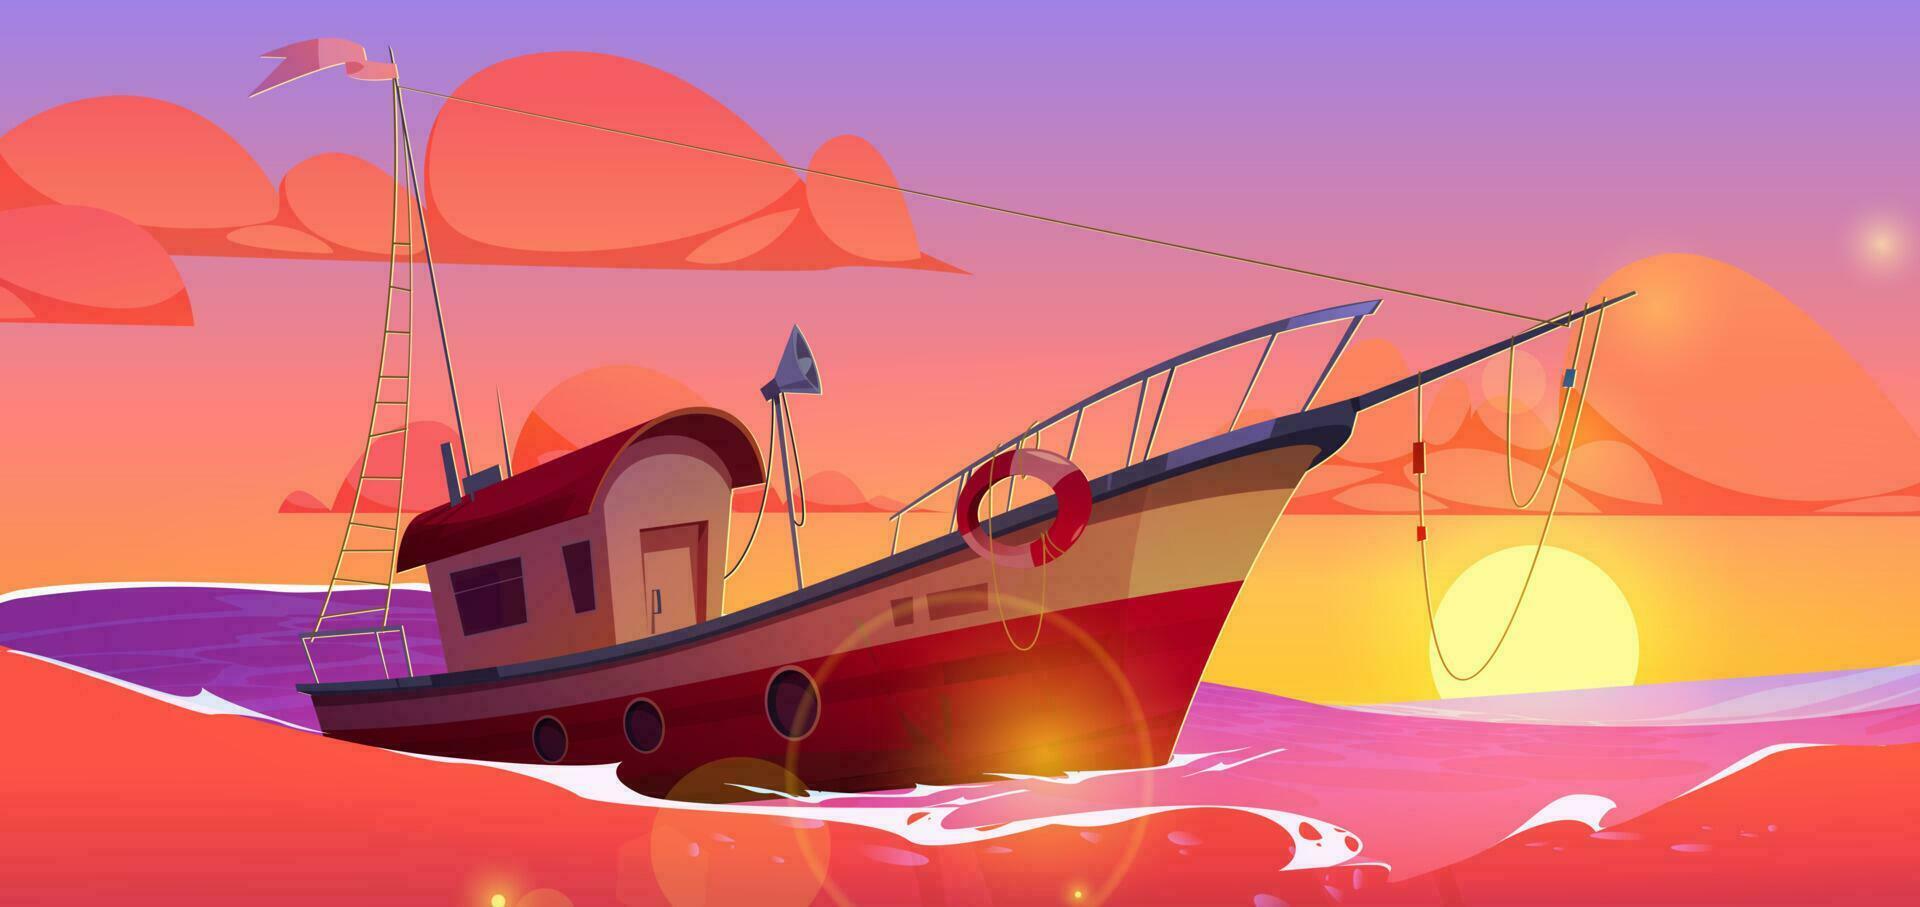 Karikatur Boot schwebend im Meer, Sonnenuntergang Hintergrund vektor